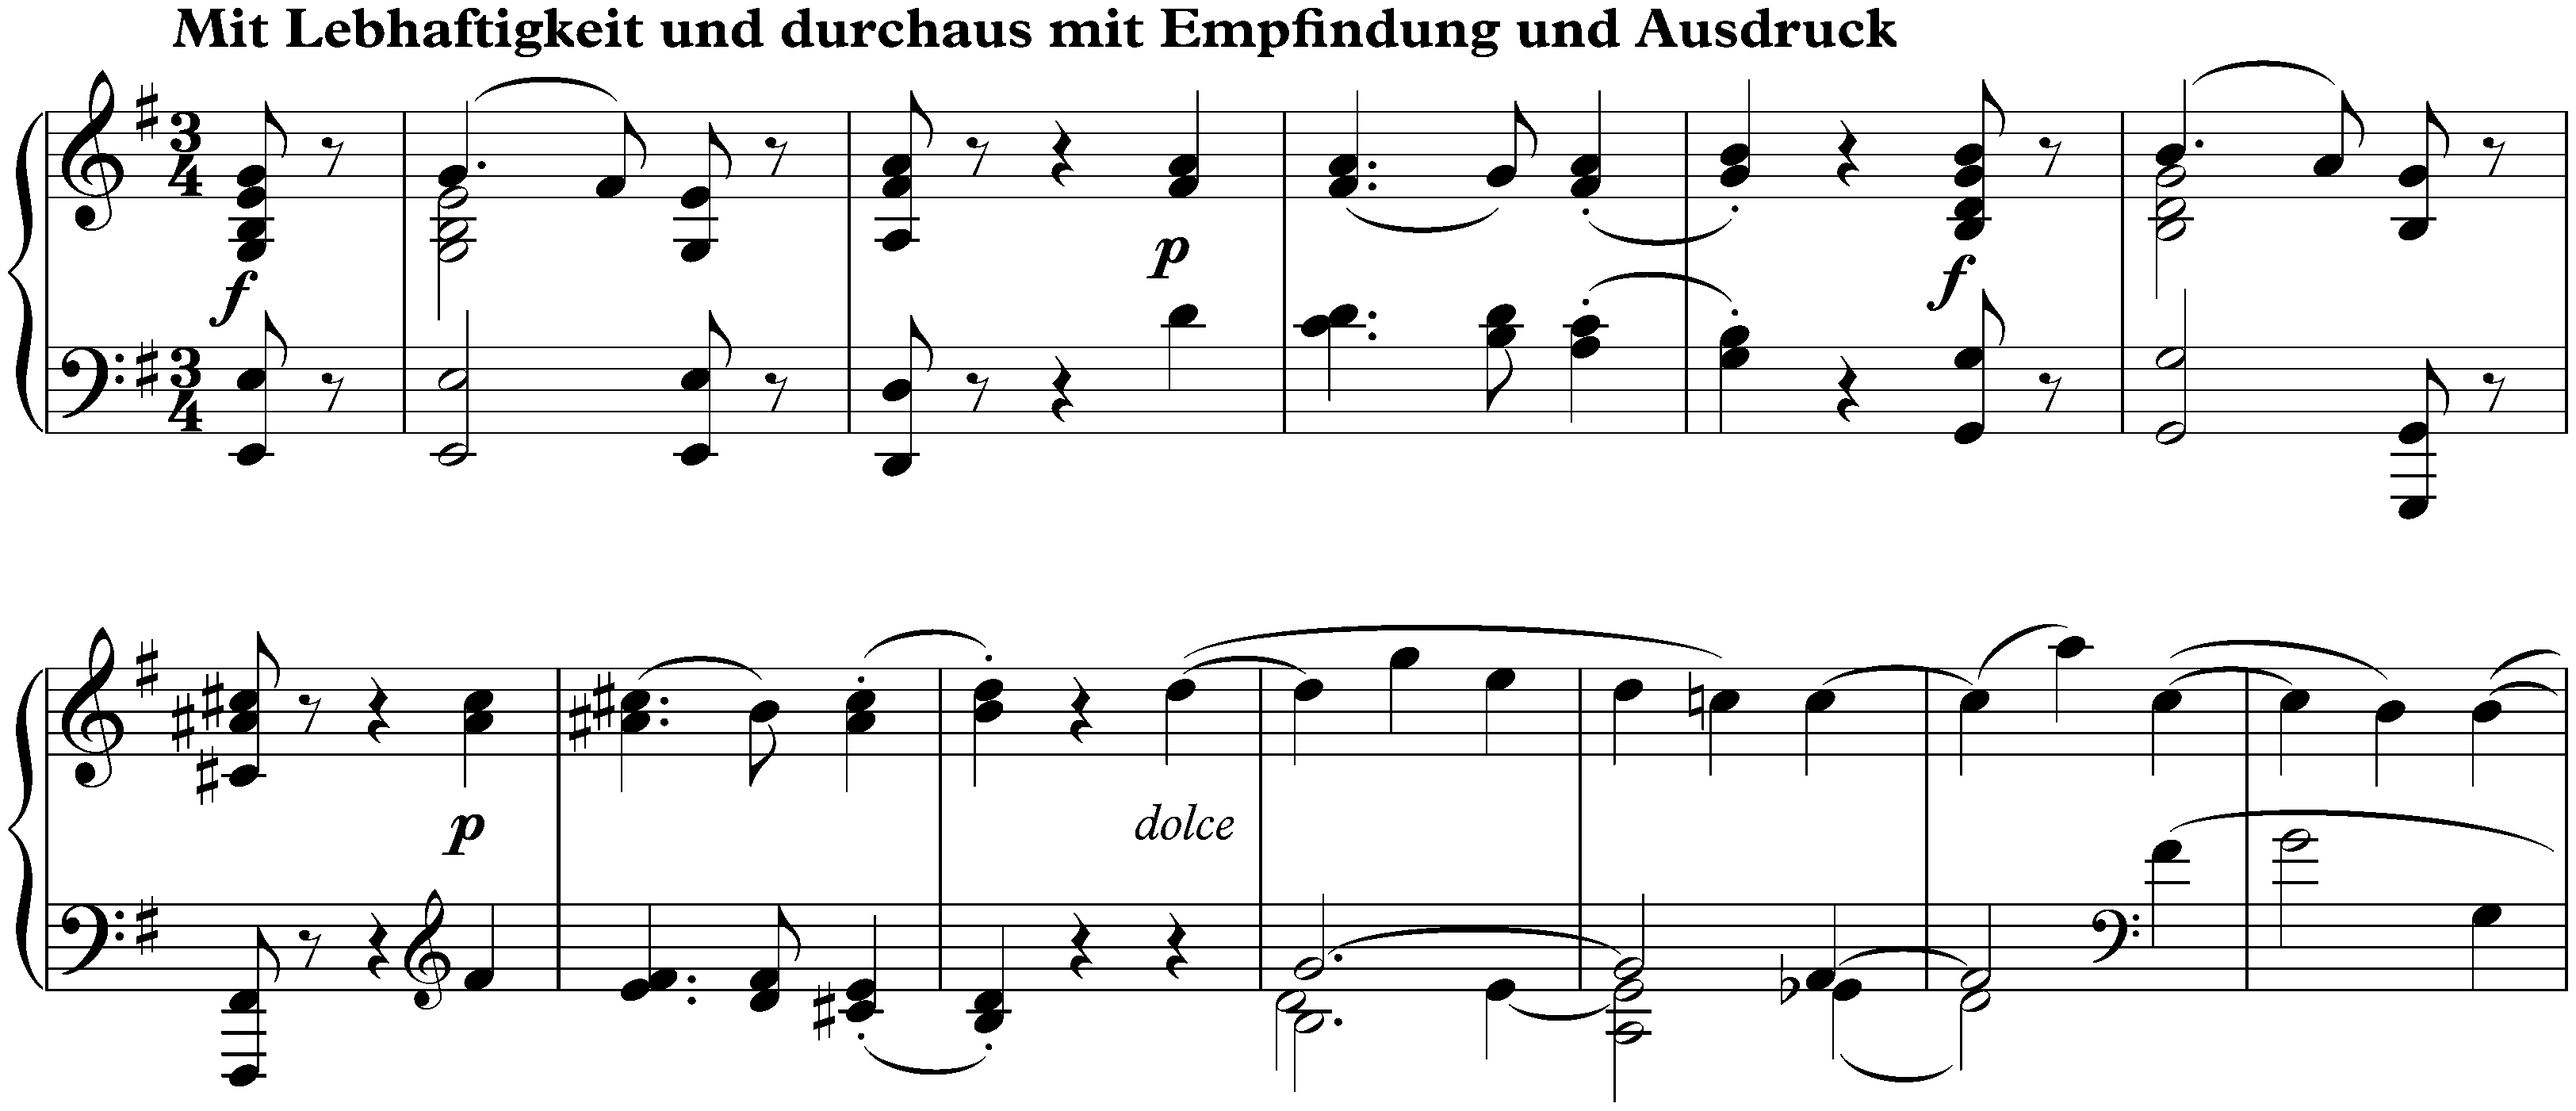 Sonata no. 27 in E minor, op. 90; 1. Mit Lebhaftigkeit und durchaus mit Empfindung und Ausdruck